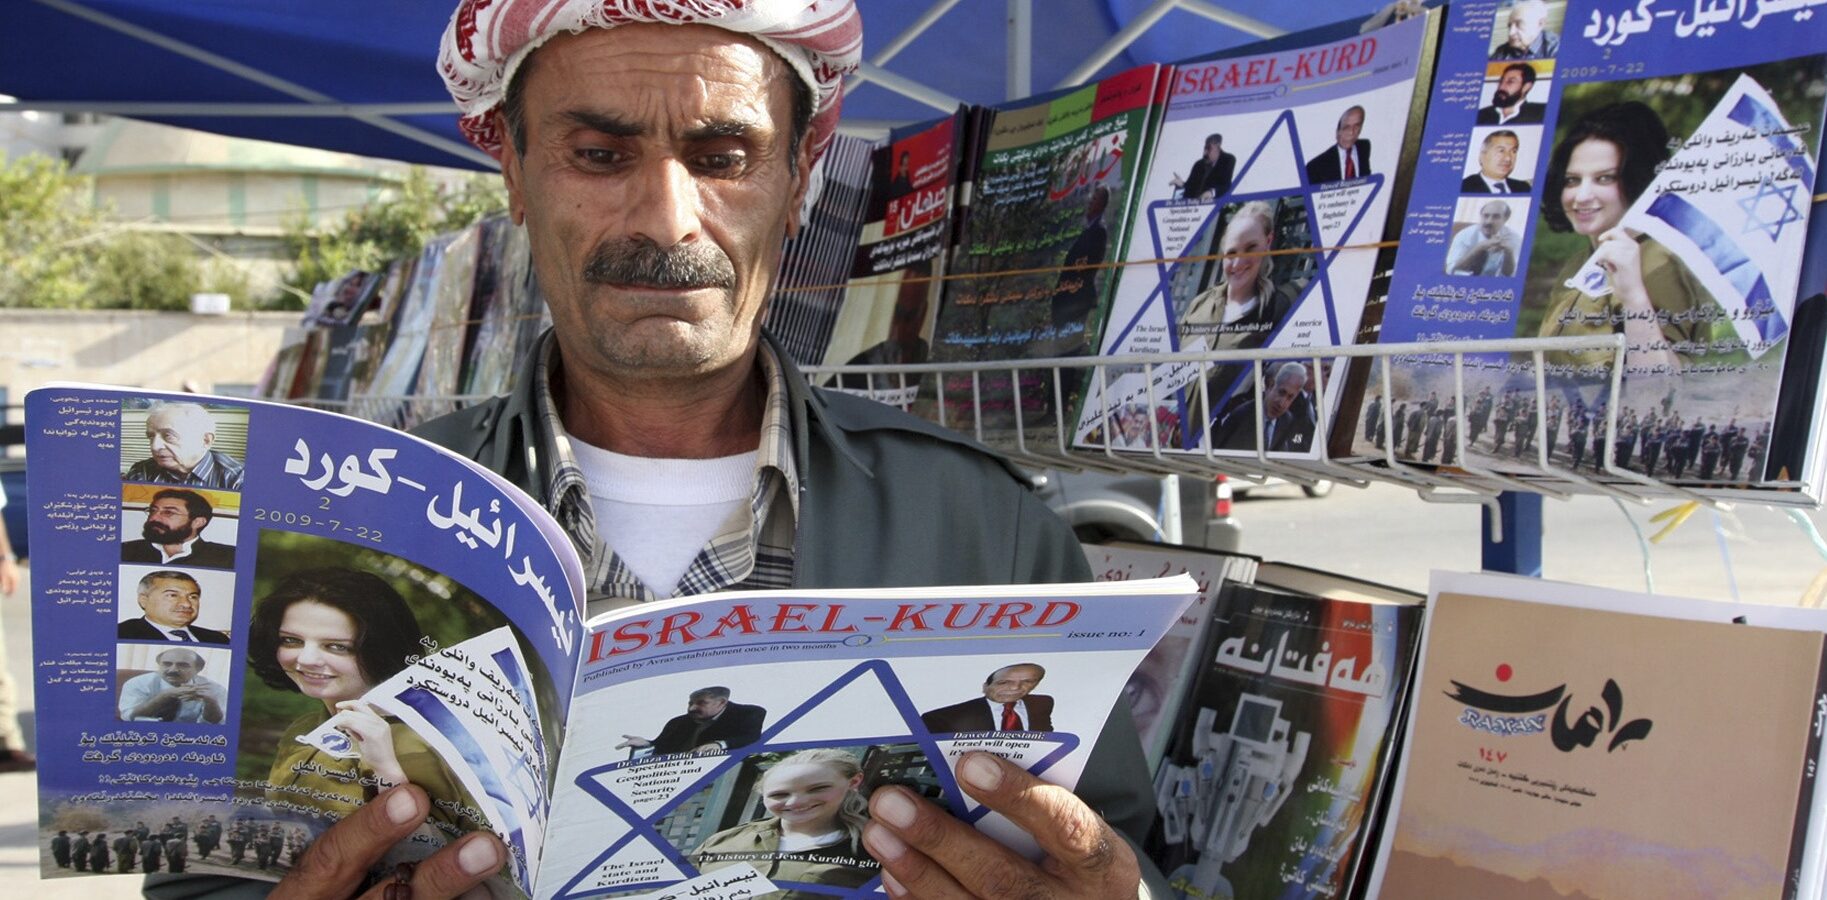 An Iraqi Kurd reads a copy of the magazine Israel-Kurd on a street in Irbil, Iraq in 2009. (Azad Lashkari/Reuters)